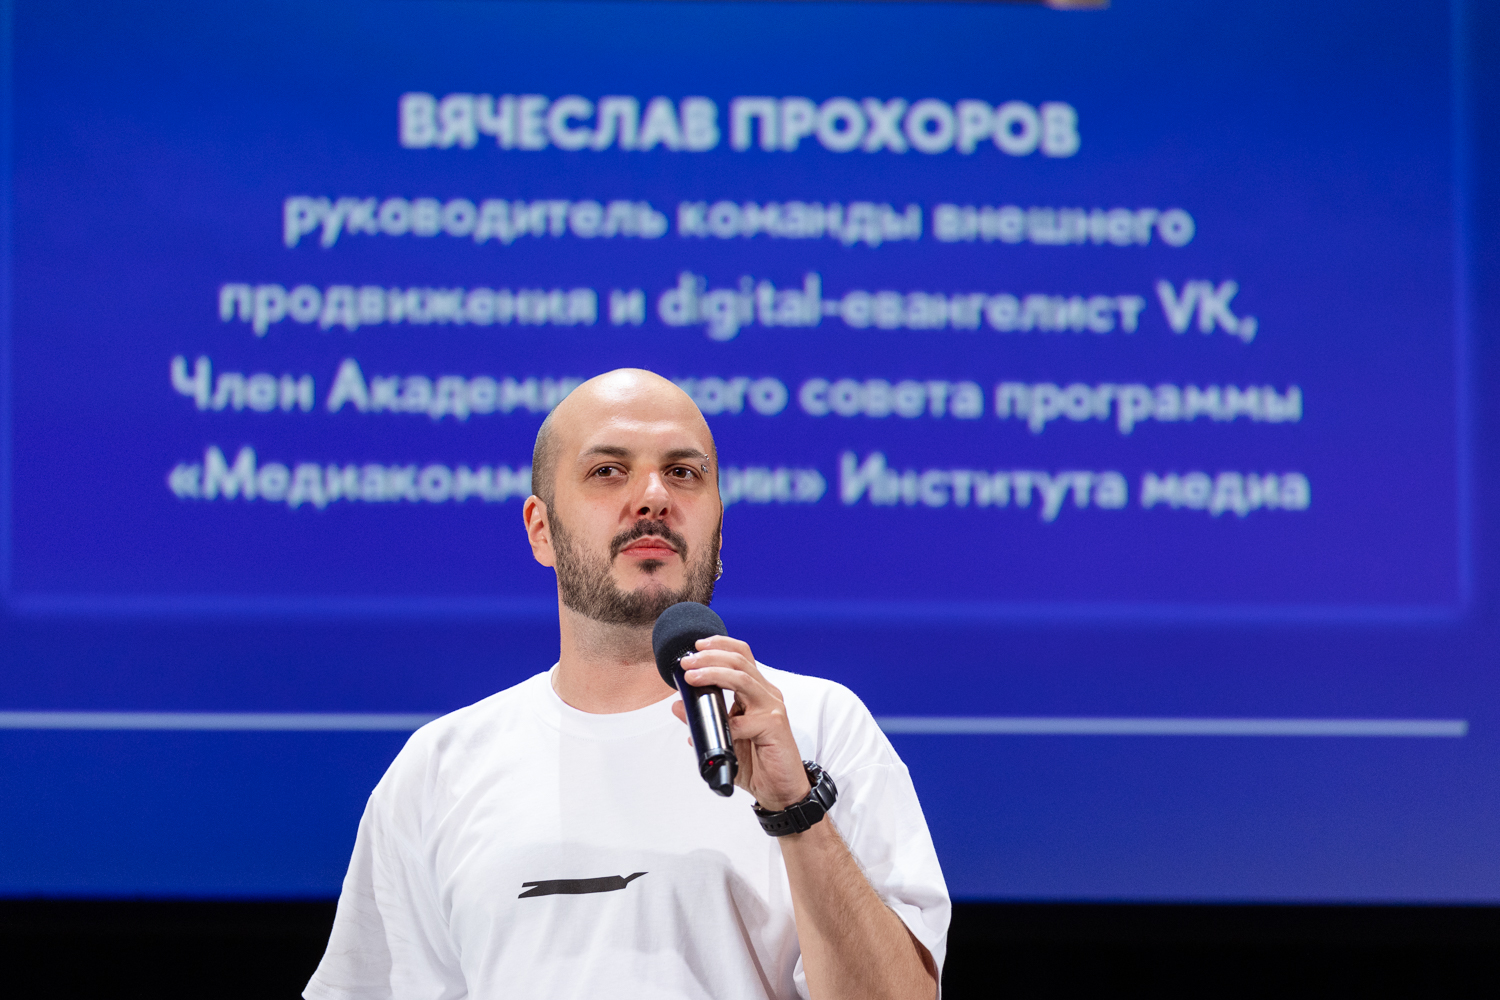 Вячеслав Прохоров